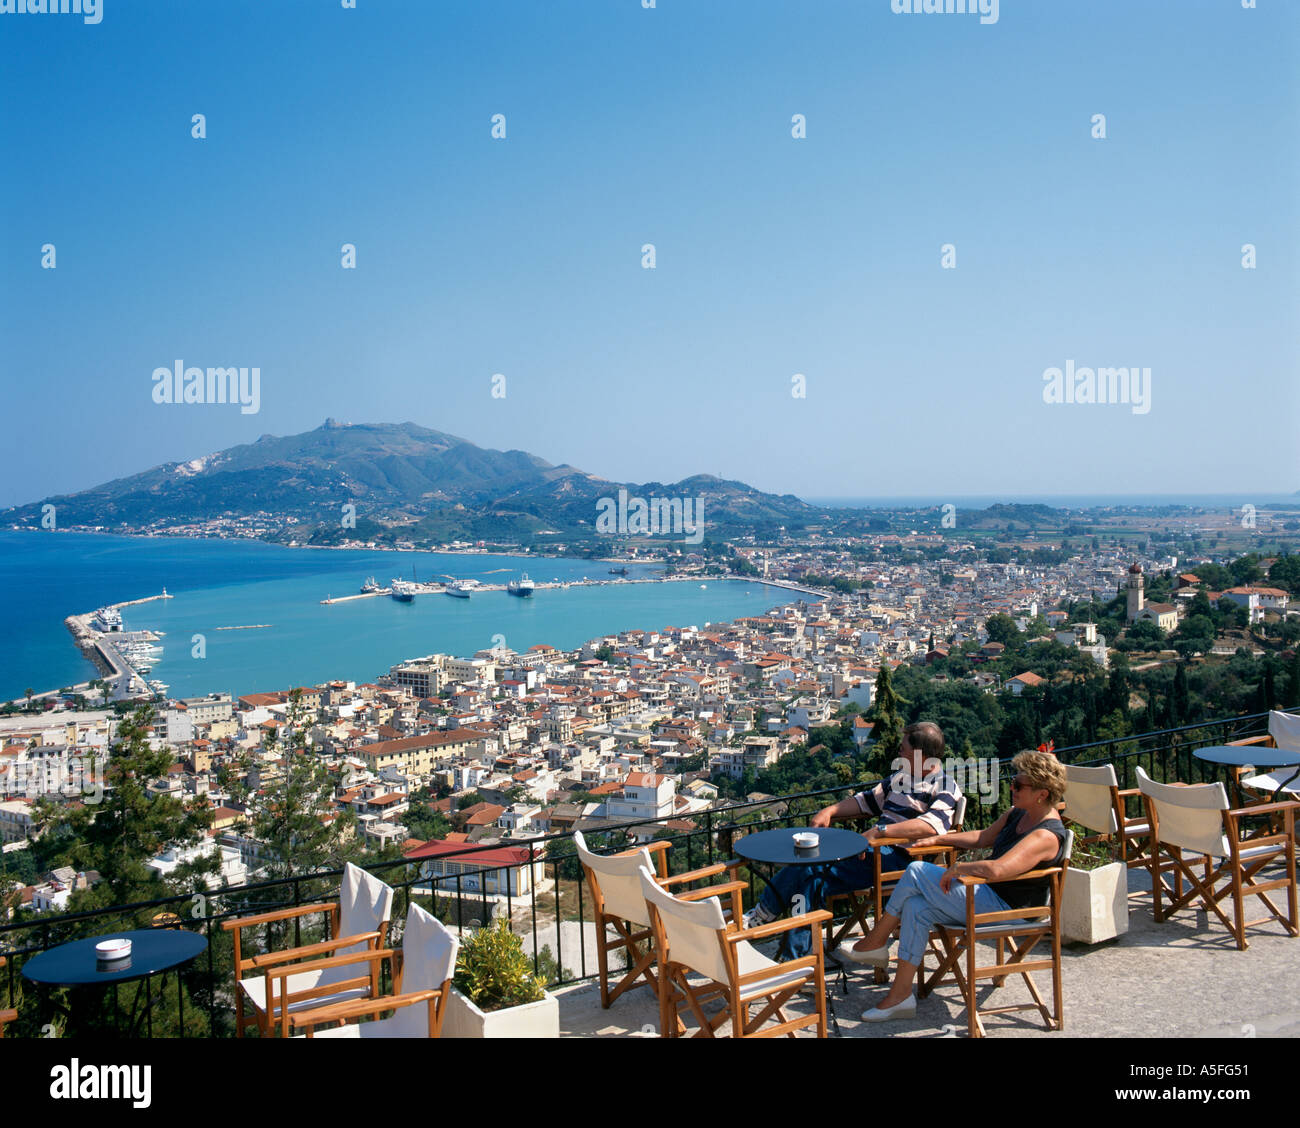 Terrasse de restaurant avec vue panoramique sur le port, la ville de Zakynthos, Bochali, Zakynthos (Zante), îles Ioniennes, Grèce Banque D'Images